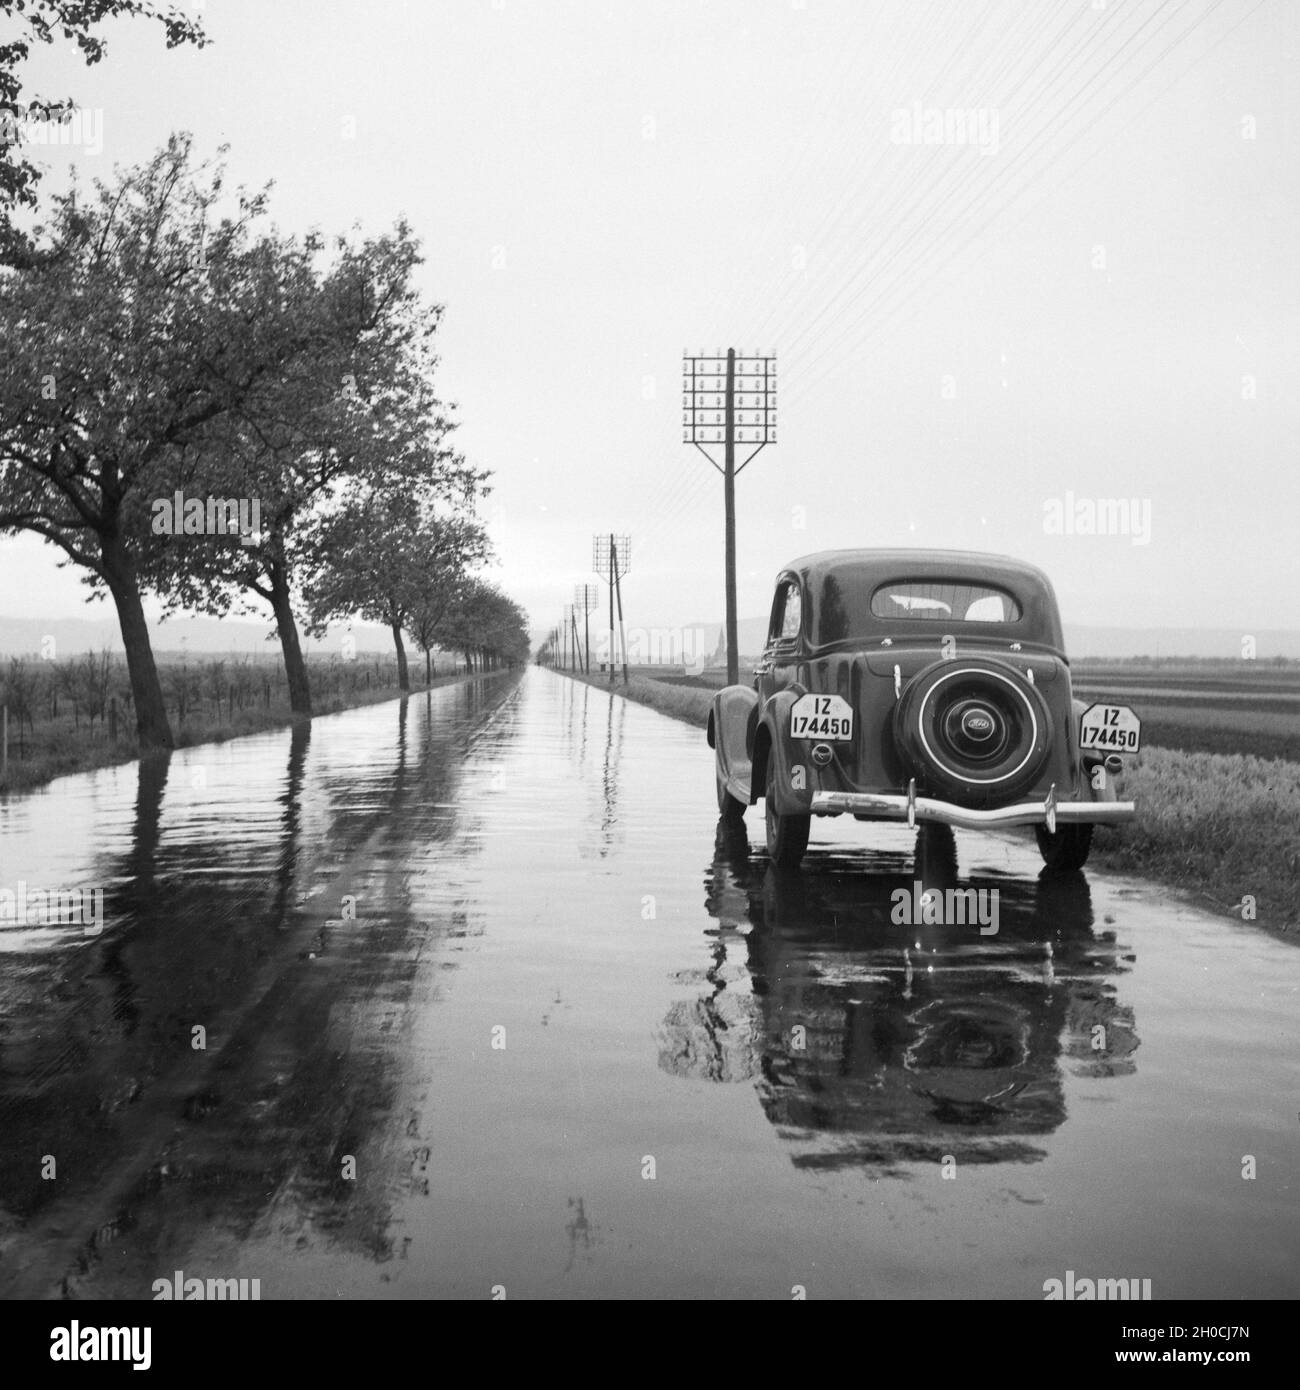 Mit dem Ford V8 auf regennasser Fahrbahn, Deutschland 1930er Jahre. With the Ford V8 on a wet street, Germany 1930s. Stock Photo